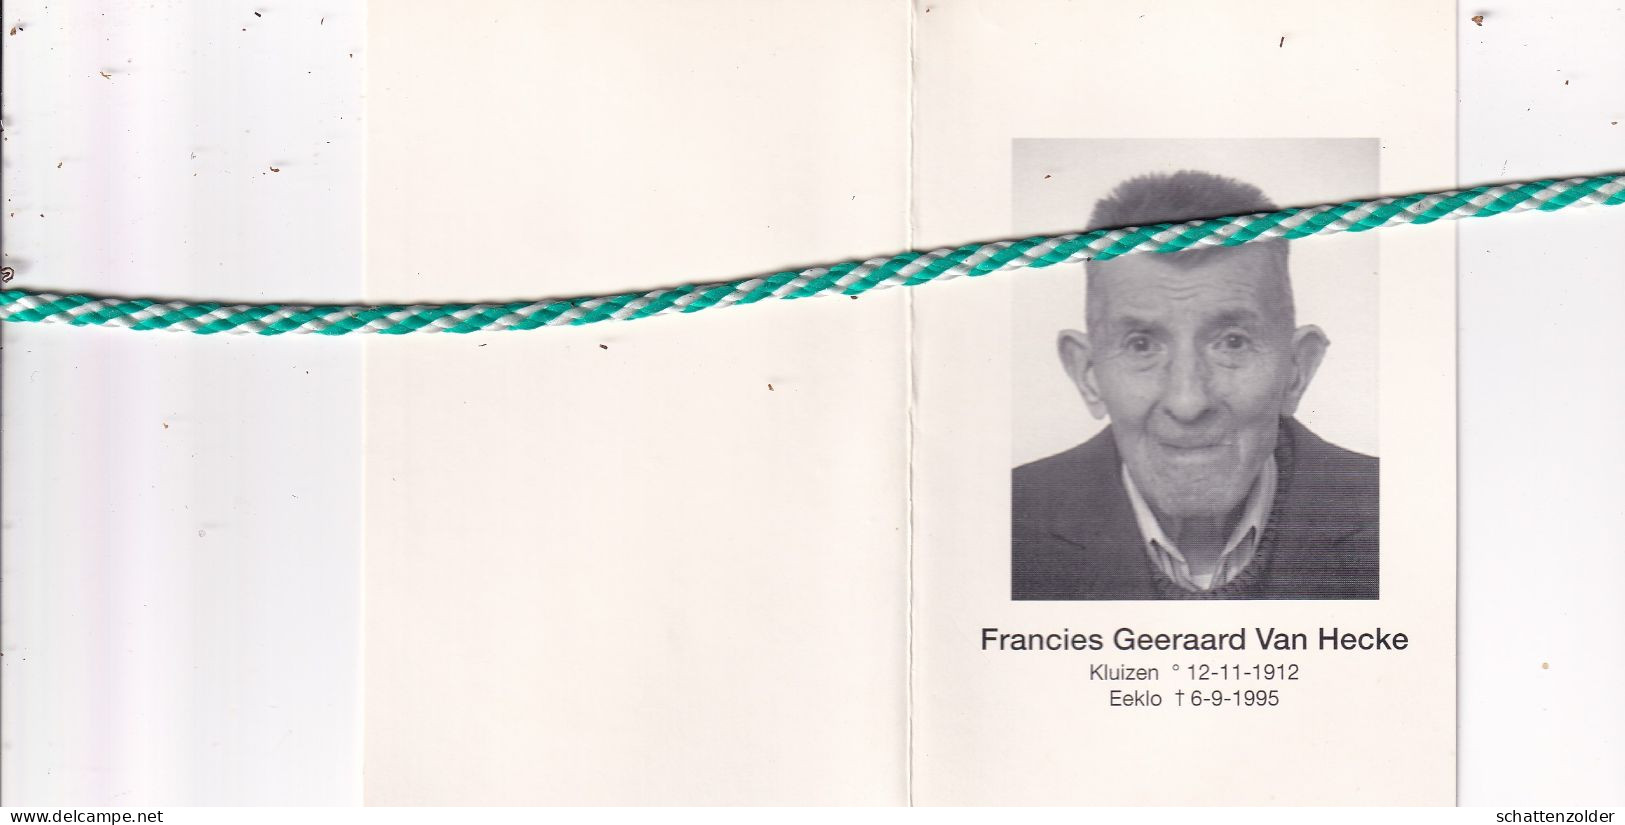 Francies Geeraard Van Hecke-De Muynck-De Baets, Kluizen 1912, Eeklo 1995. Oud-strijder 40-45; Foto - Esquela